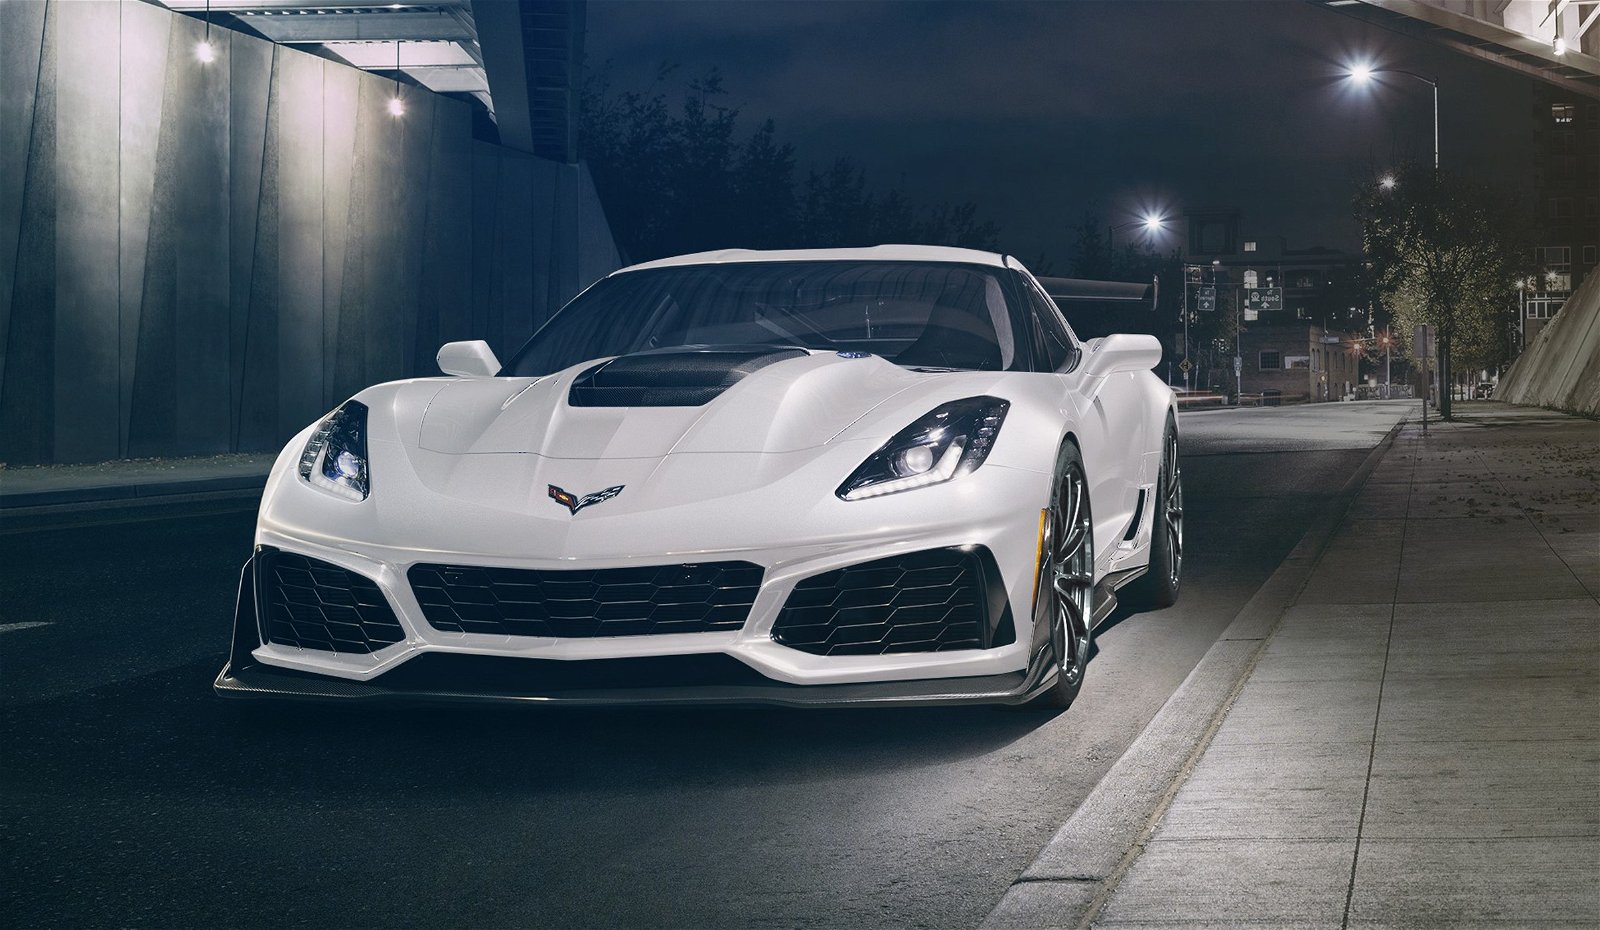 2019-zr1-corvette-hennessey-white-wheels-front-rev